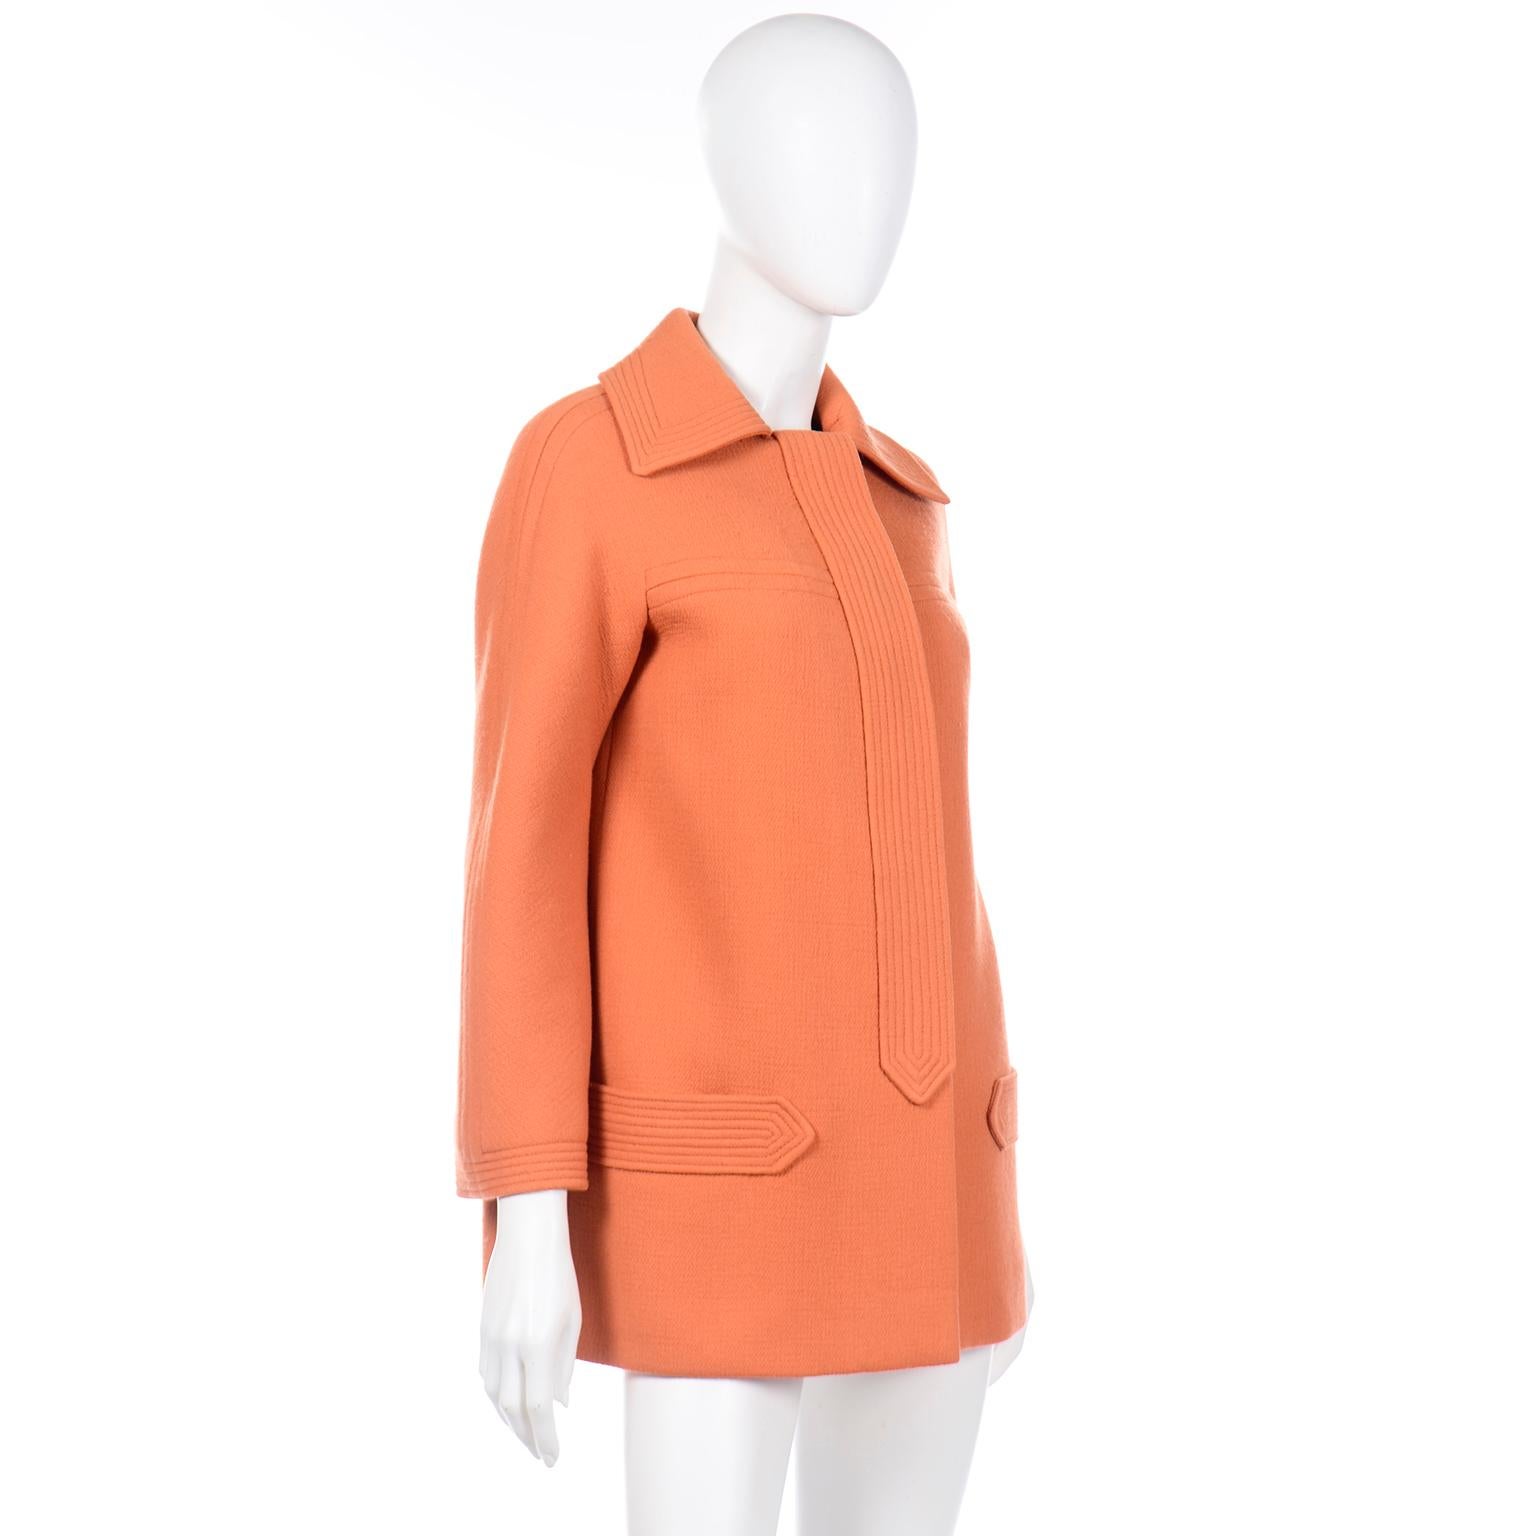 Women's Pierre Cardin Vintage Orange Wool Jacket or Short Coat Late 1960s Early 1970s For Sale